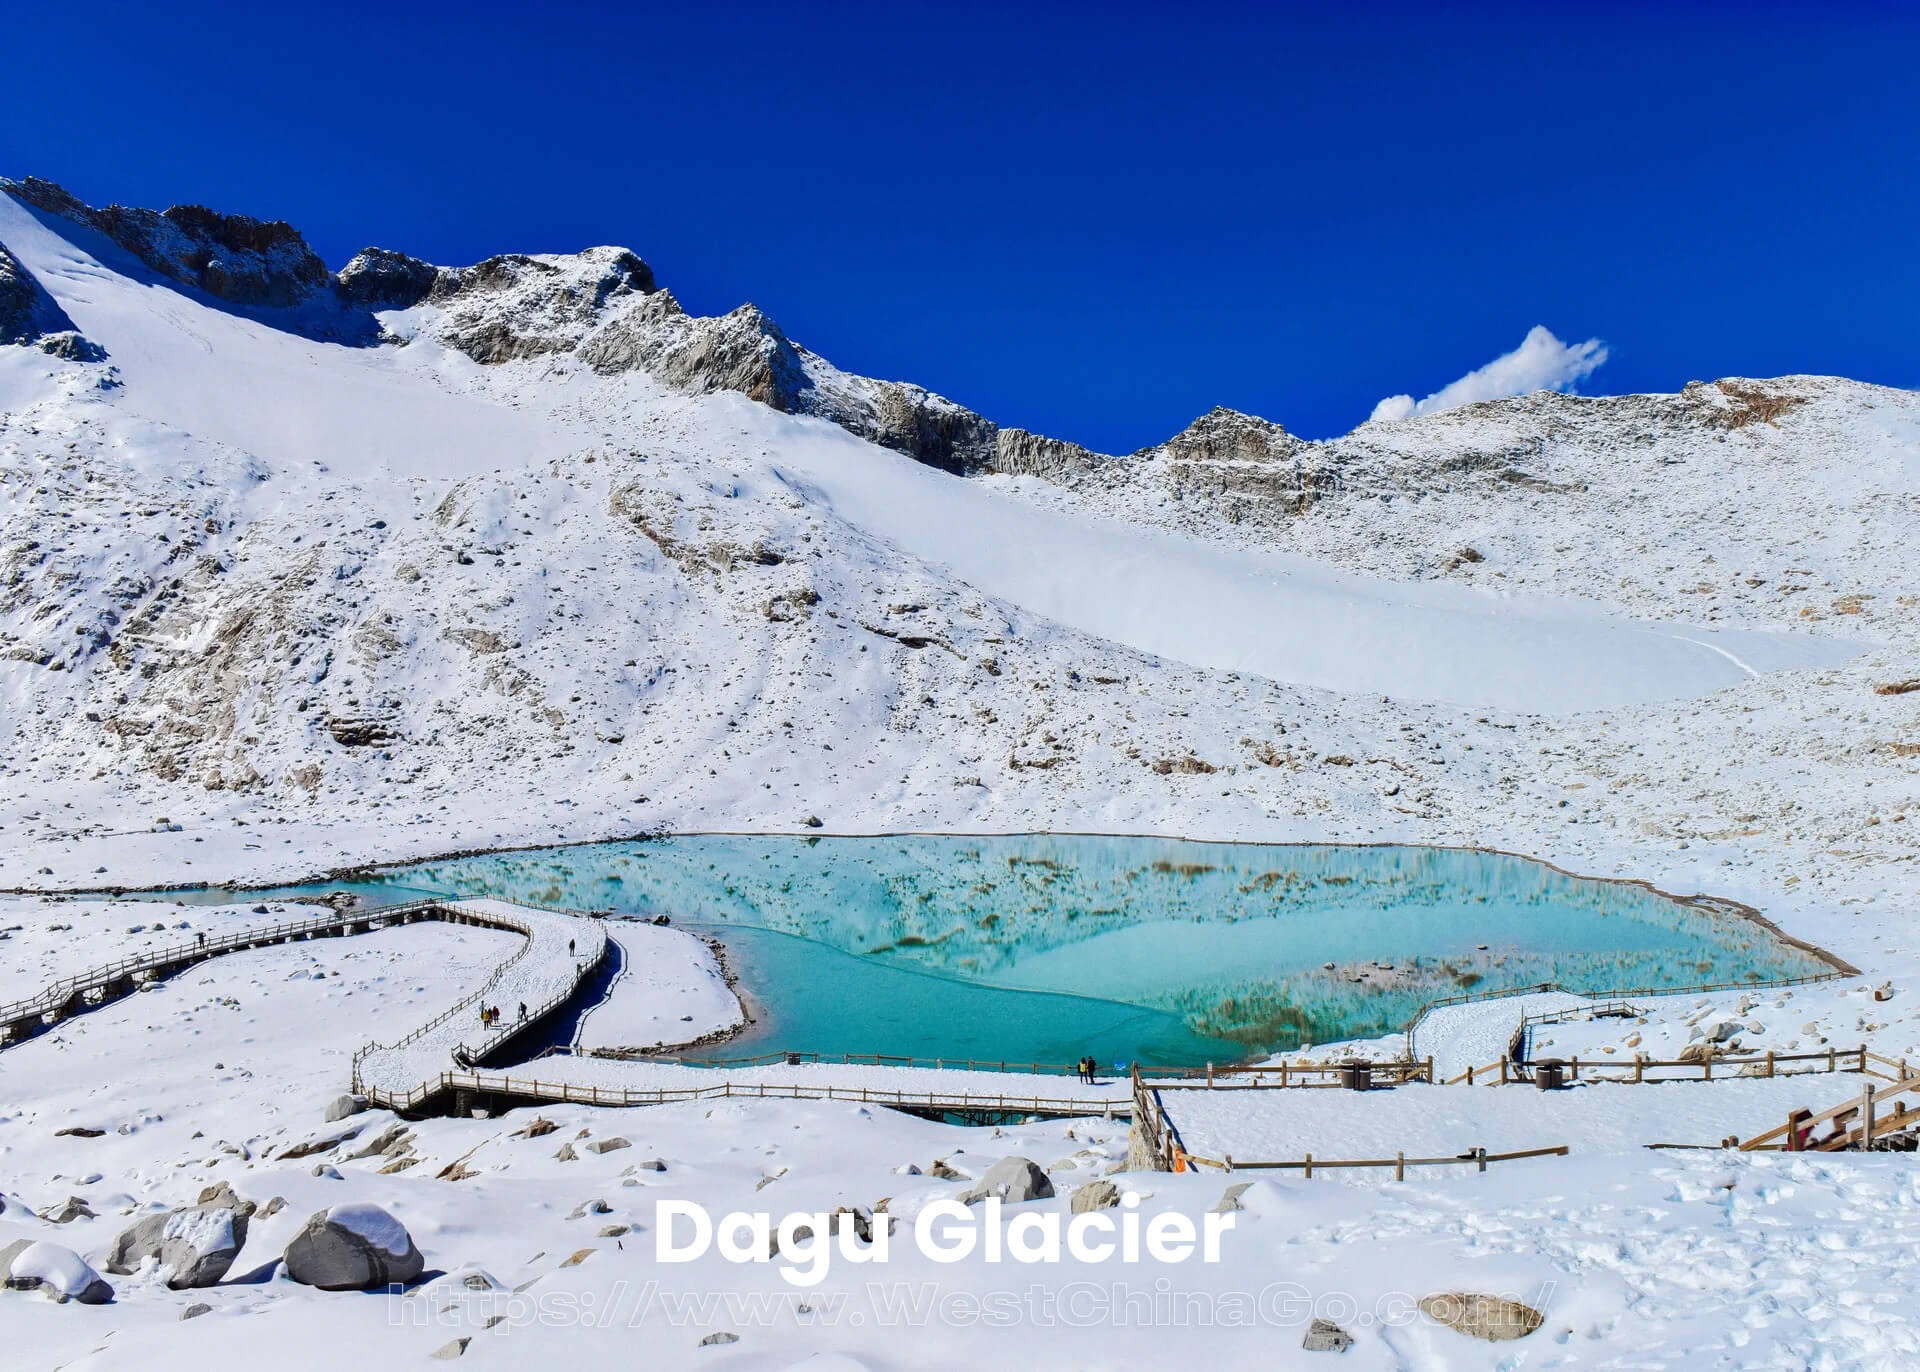 Dagu Glacier